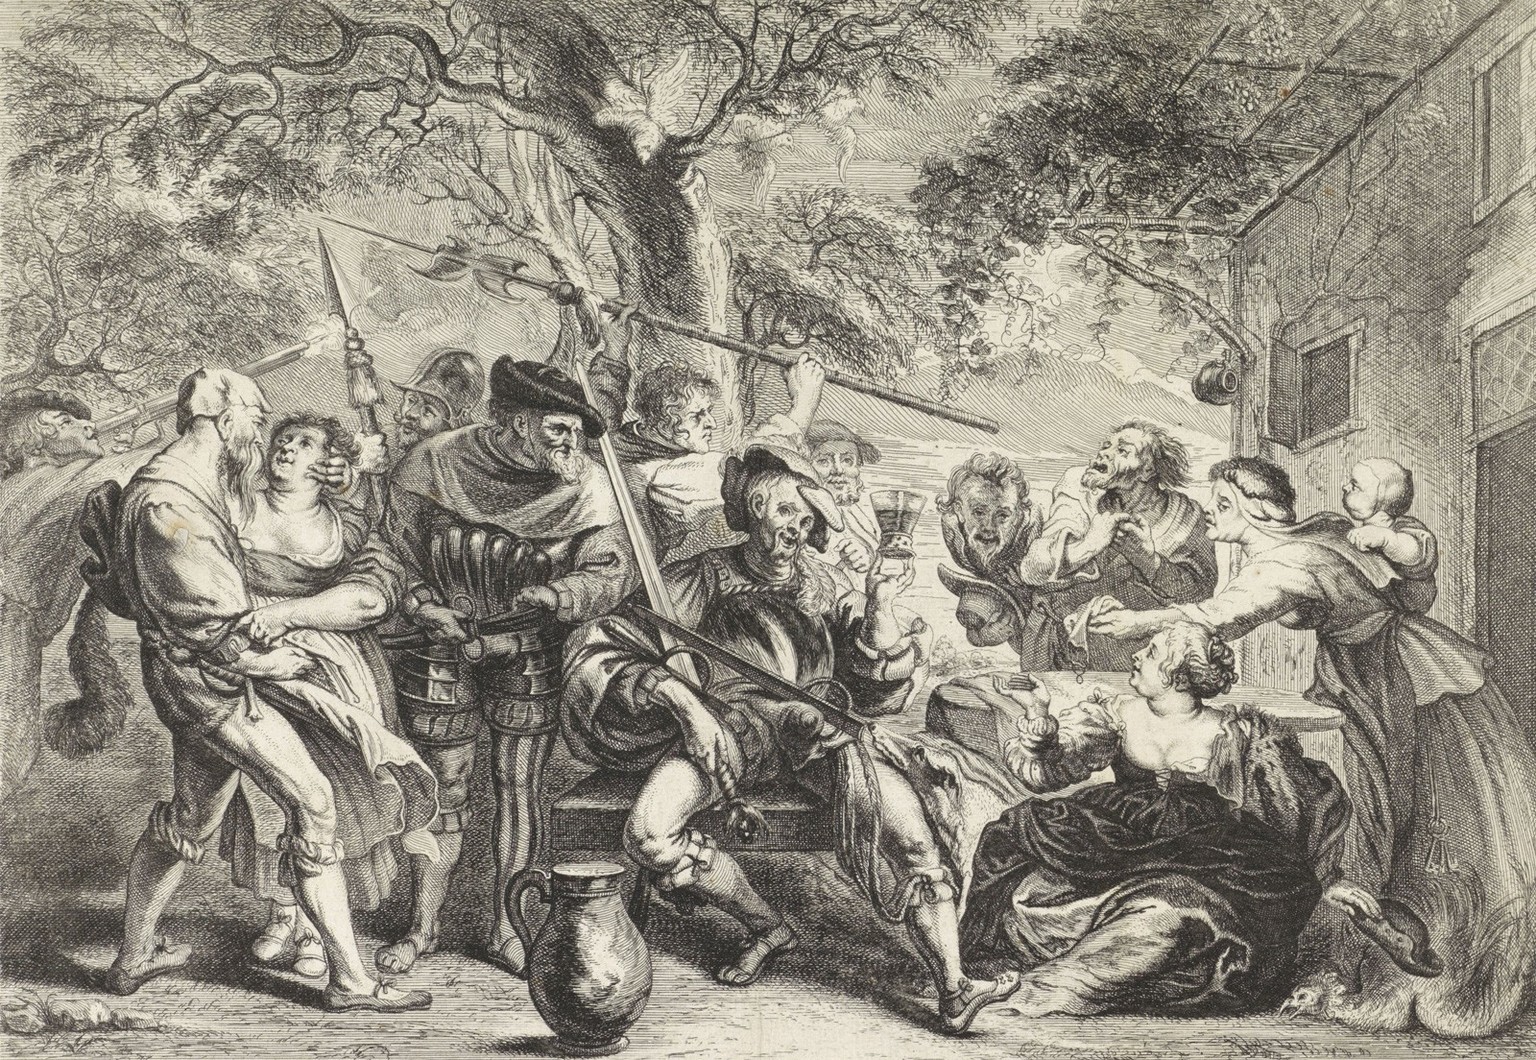 Auch das war für die lokale Bevölkerung bisweilen belastend: Feiernde Soldaten vor einem Gasthaus. Stich von Frans van den Wijngaerde, nach Peter Paul Rubens, um 1650.
https://www.rijksmuseum.nl/en/se ...